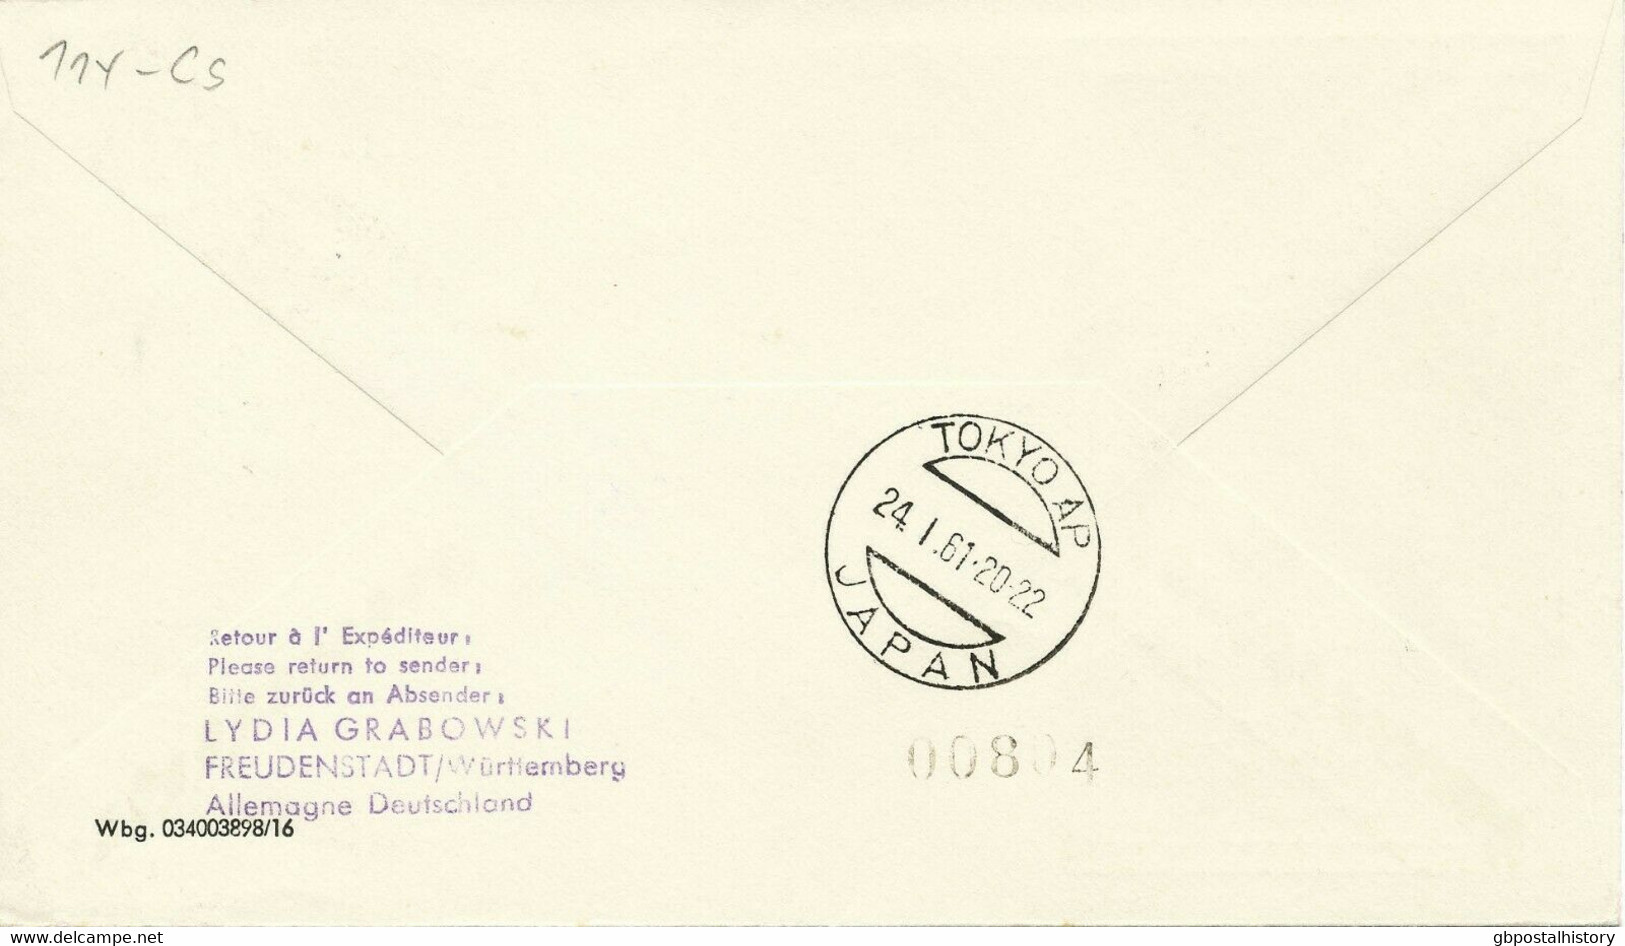 TSCHECHOSLOWAKEI 1961, Selt. Mitläuferpost Der Lufthansa LH640 FRANKFURT - TOKYO - Poste Aérienne